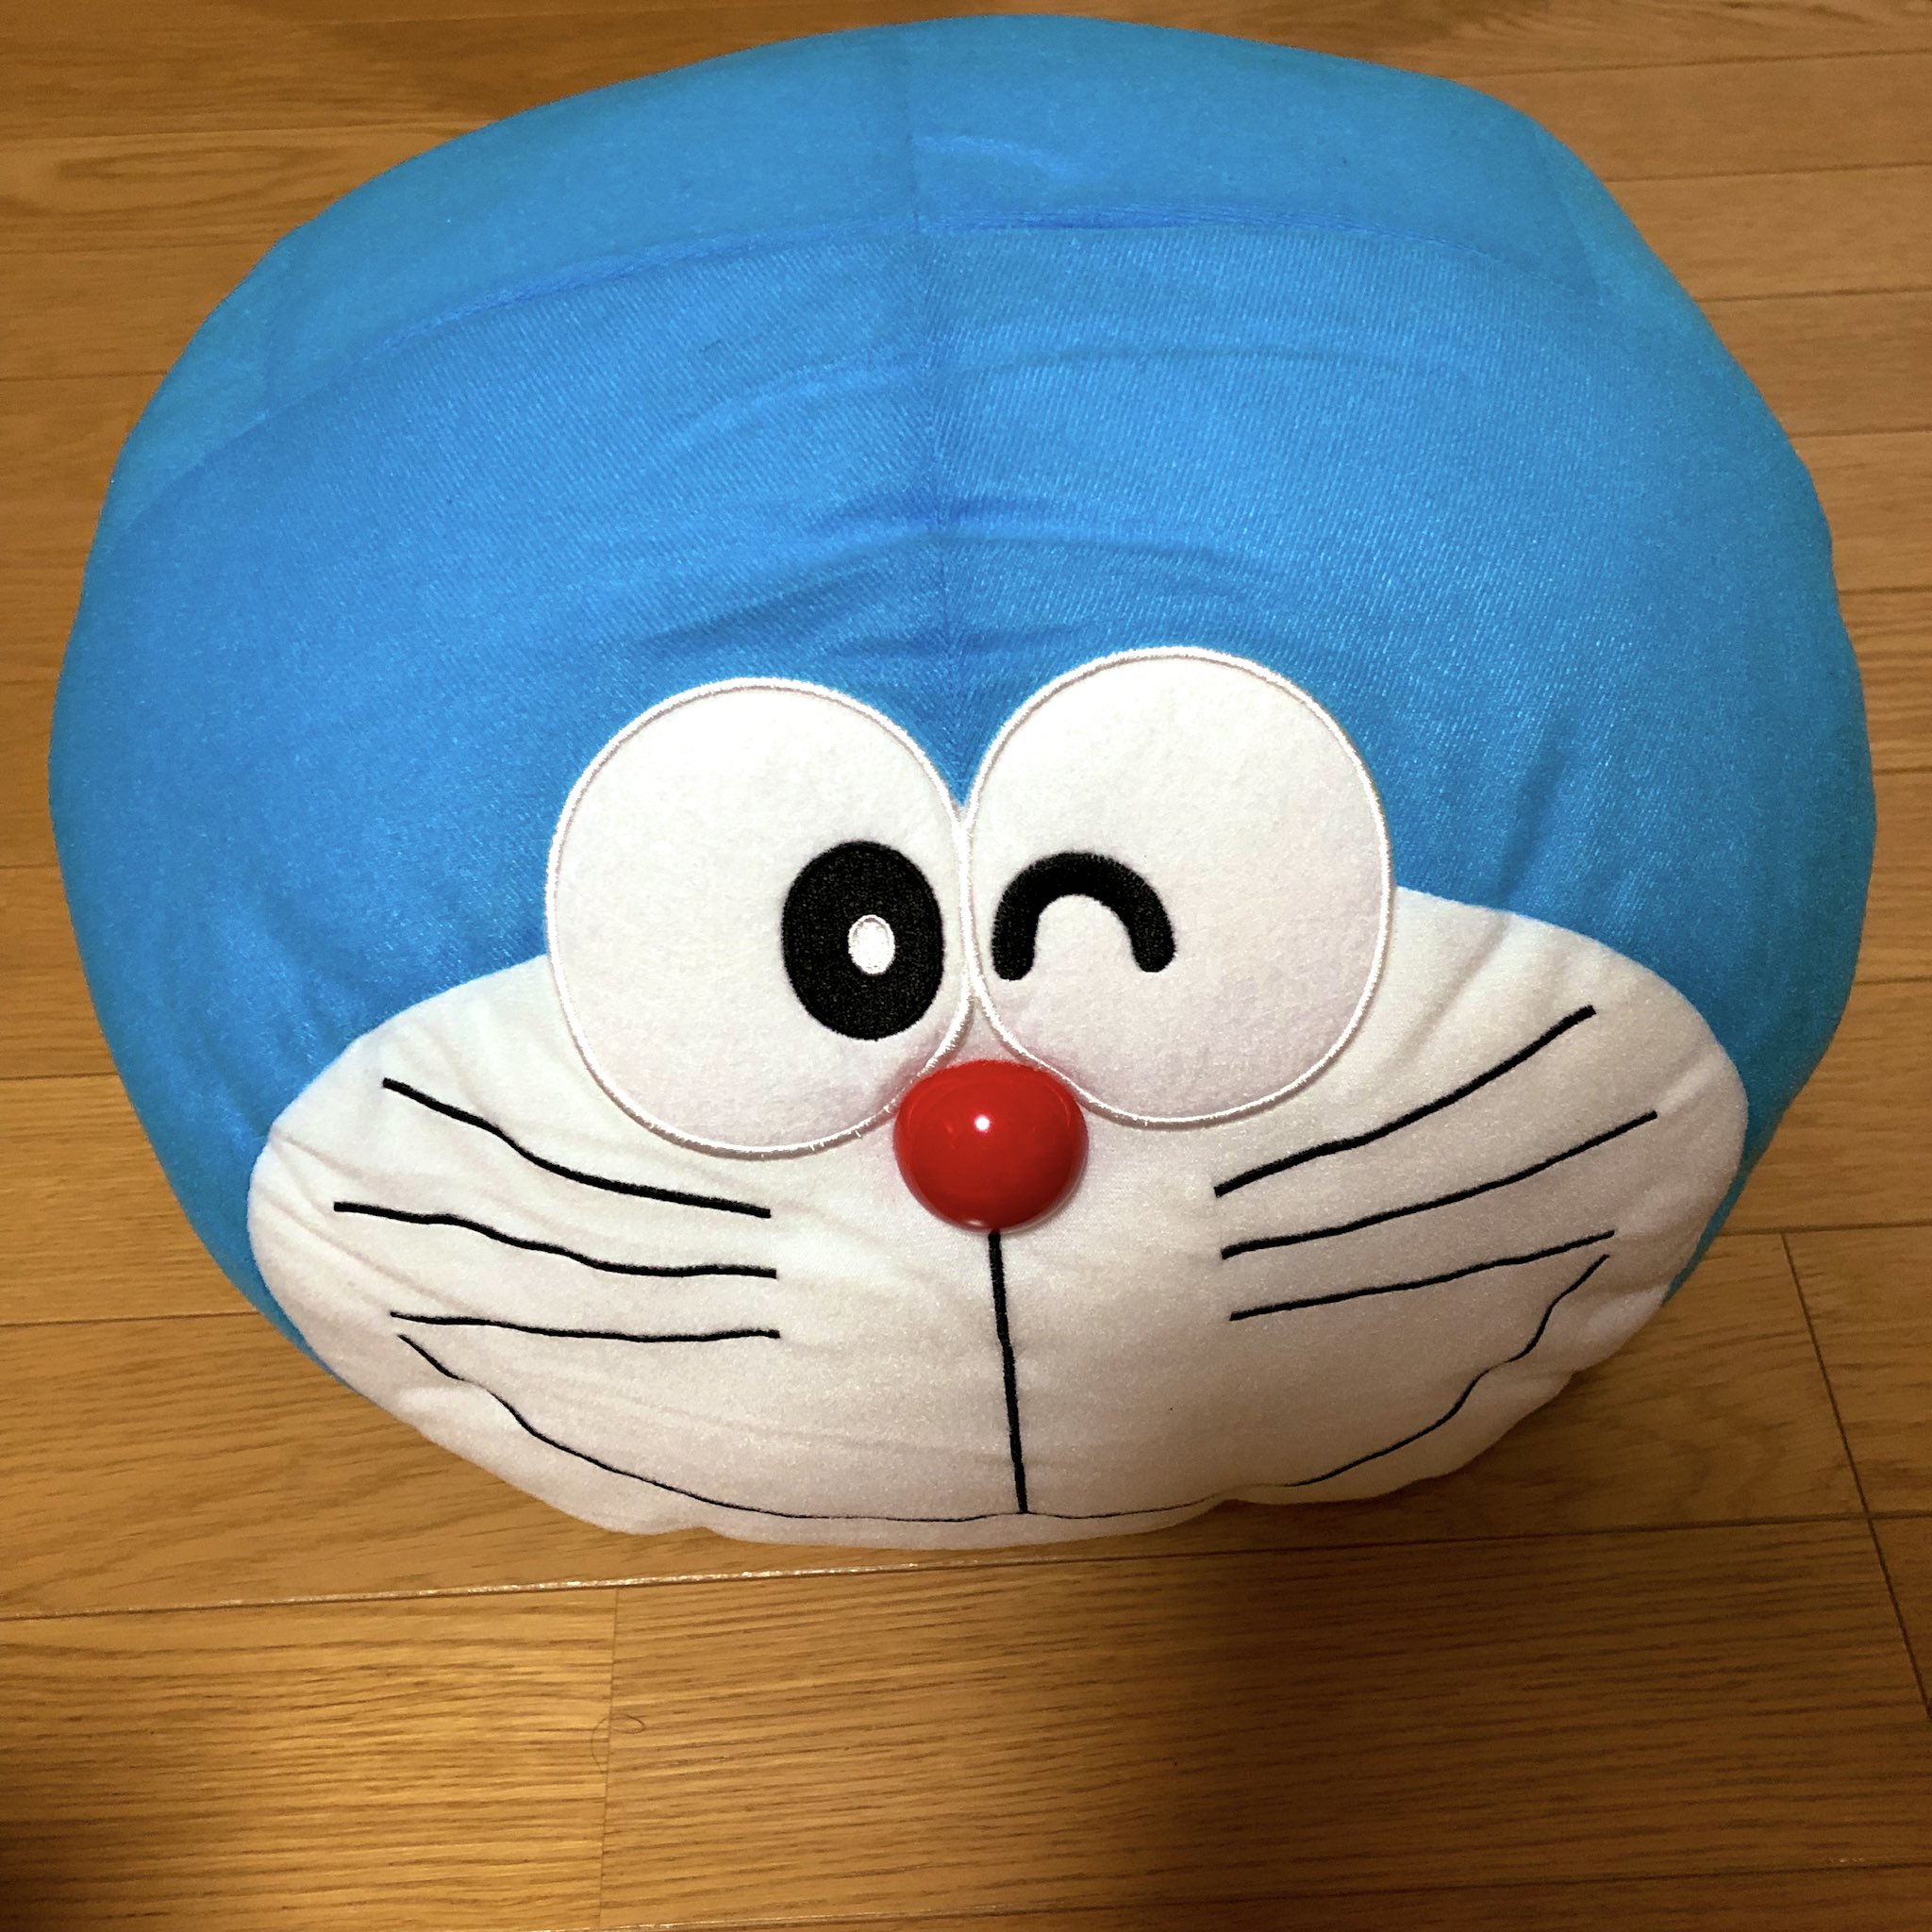 トモえもん Sf 今日のドラえもん放送のアルマジロンのドラえもんのような顔だけのぬいぐるみをクローゼットから出したよ これ結構デカイのよ ほぼ生首ですwww Doraemon ドラえもん T Co Jv5d4ibvet Twitter